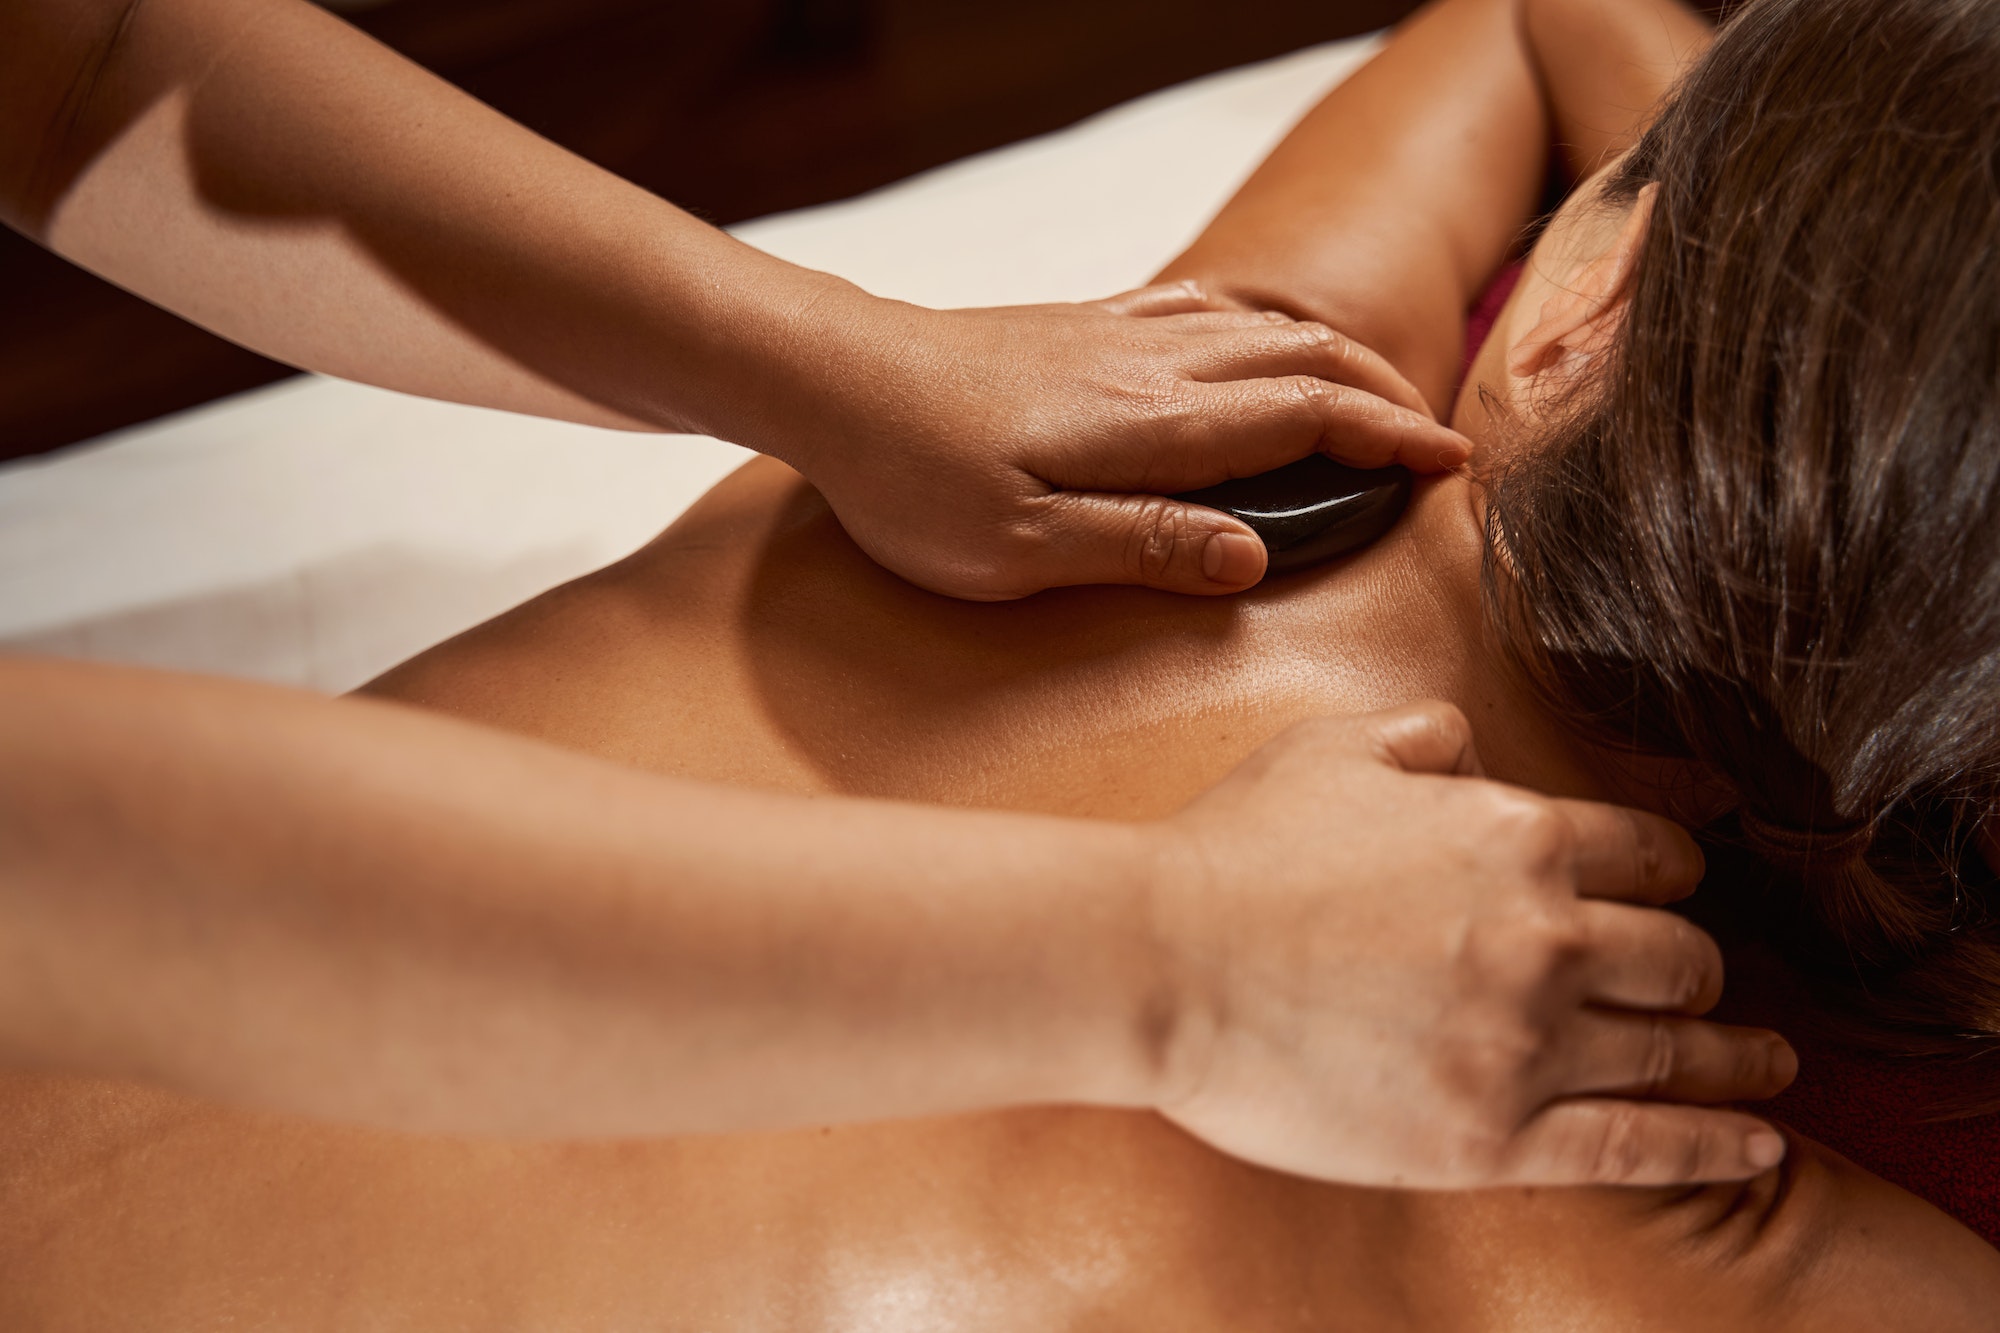 Wellness center client receiving hot stone massage